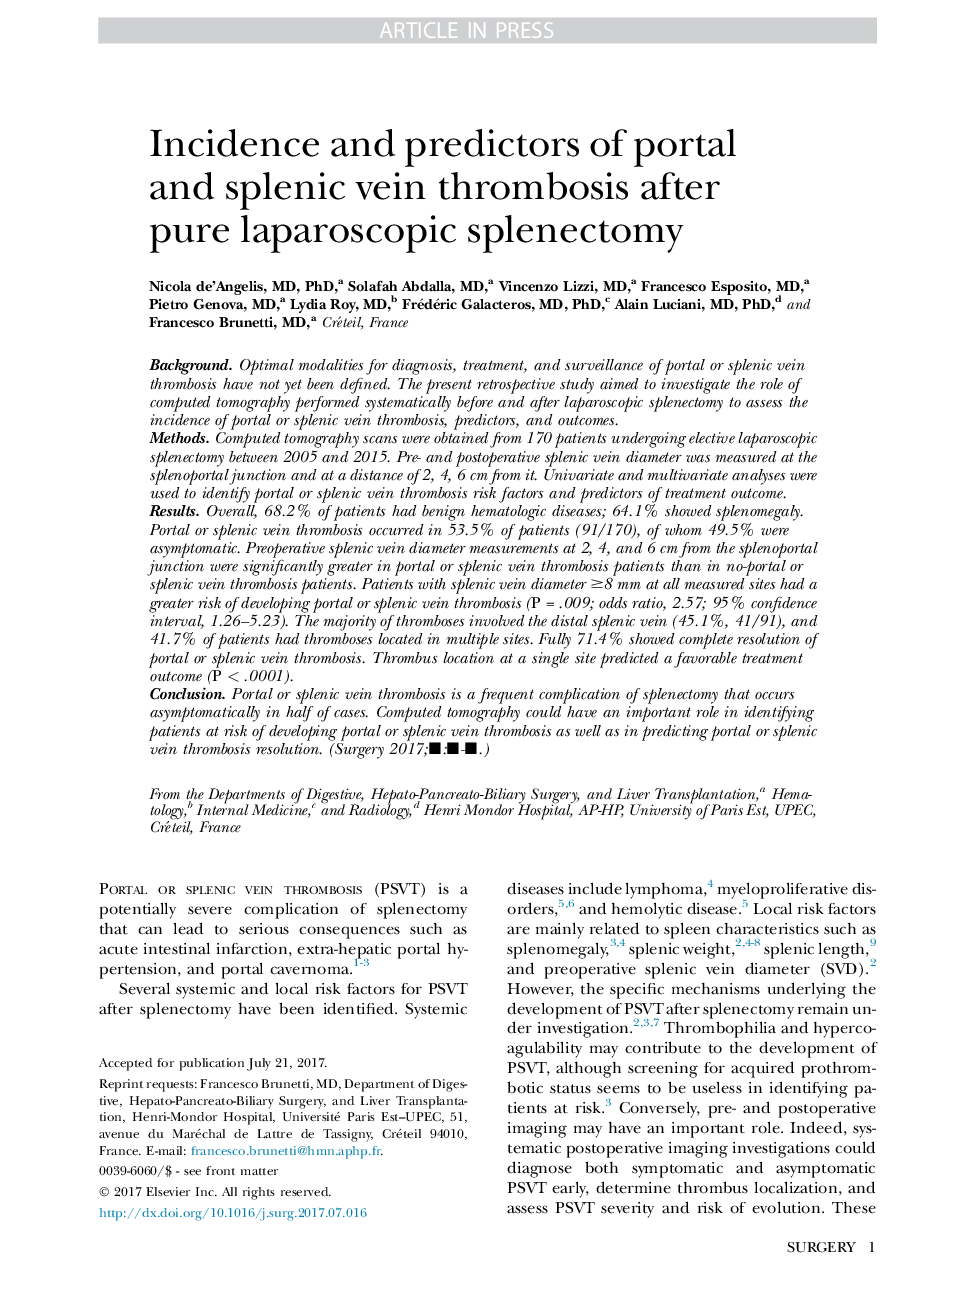 بروز و پیش بینی کننده ترومبوز ورید پورتال و اسپلنیک بعد از اسپلنکتومی لاپاروسکوپی خالص 